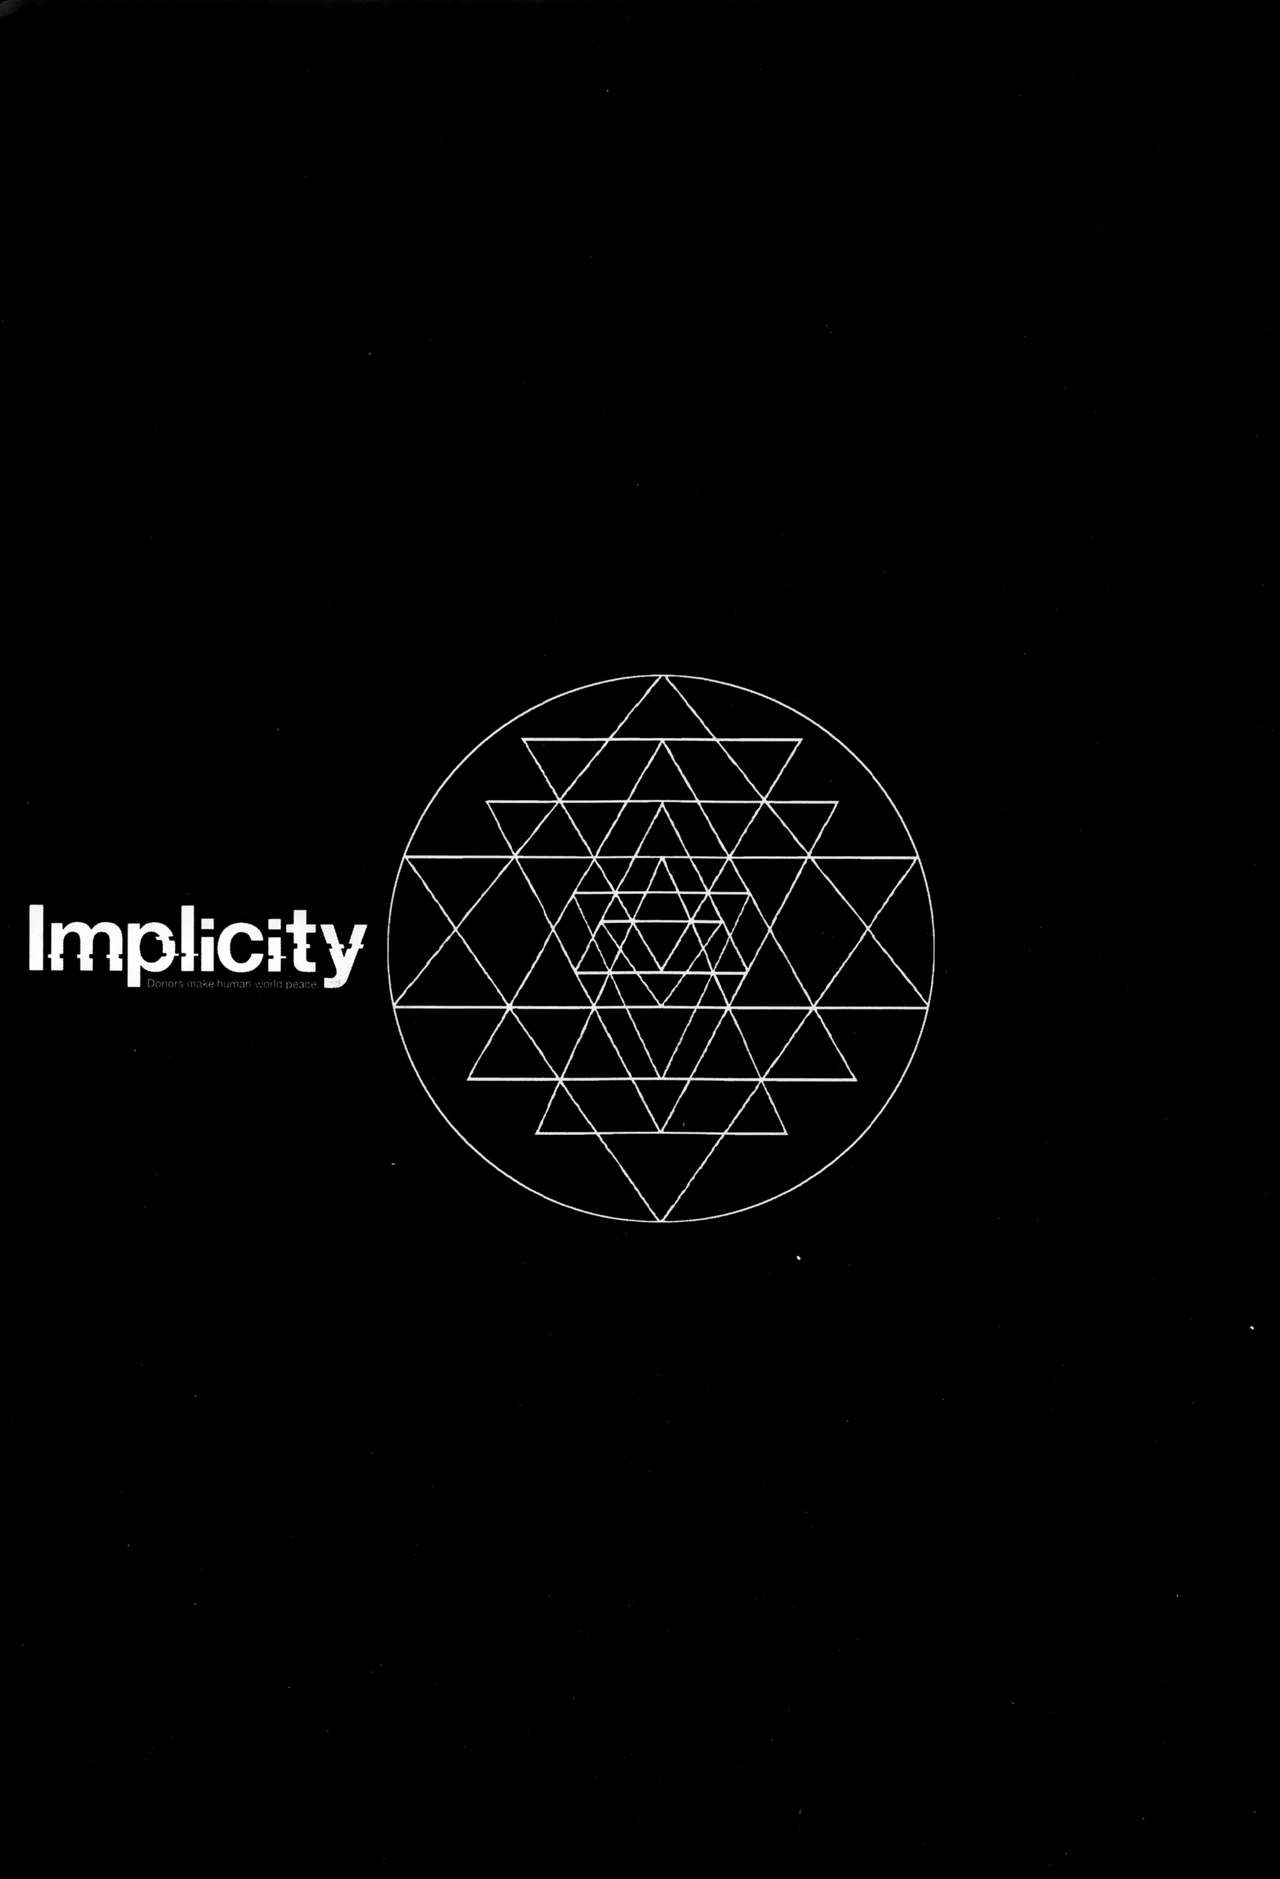 [東山翔] Implicity + 6P小冊子